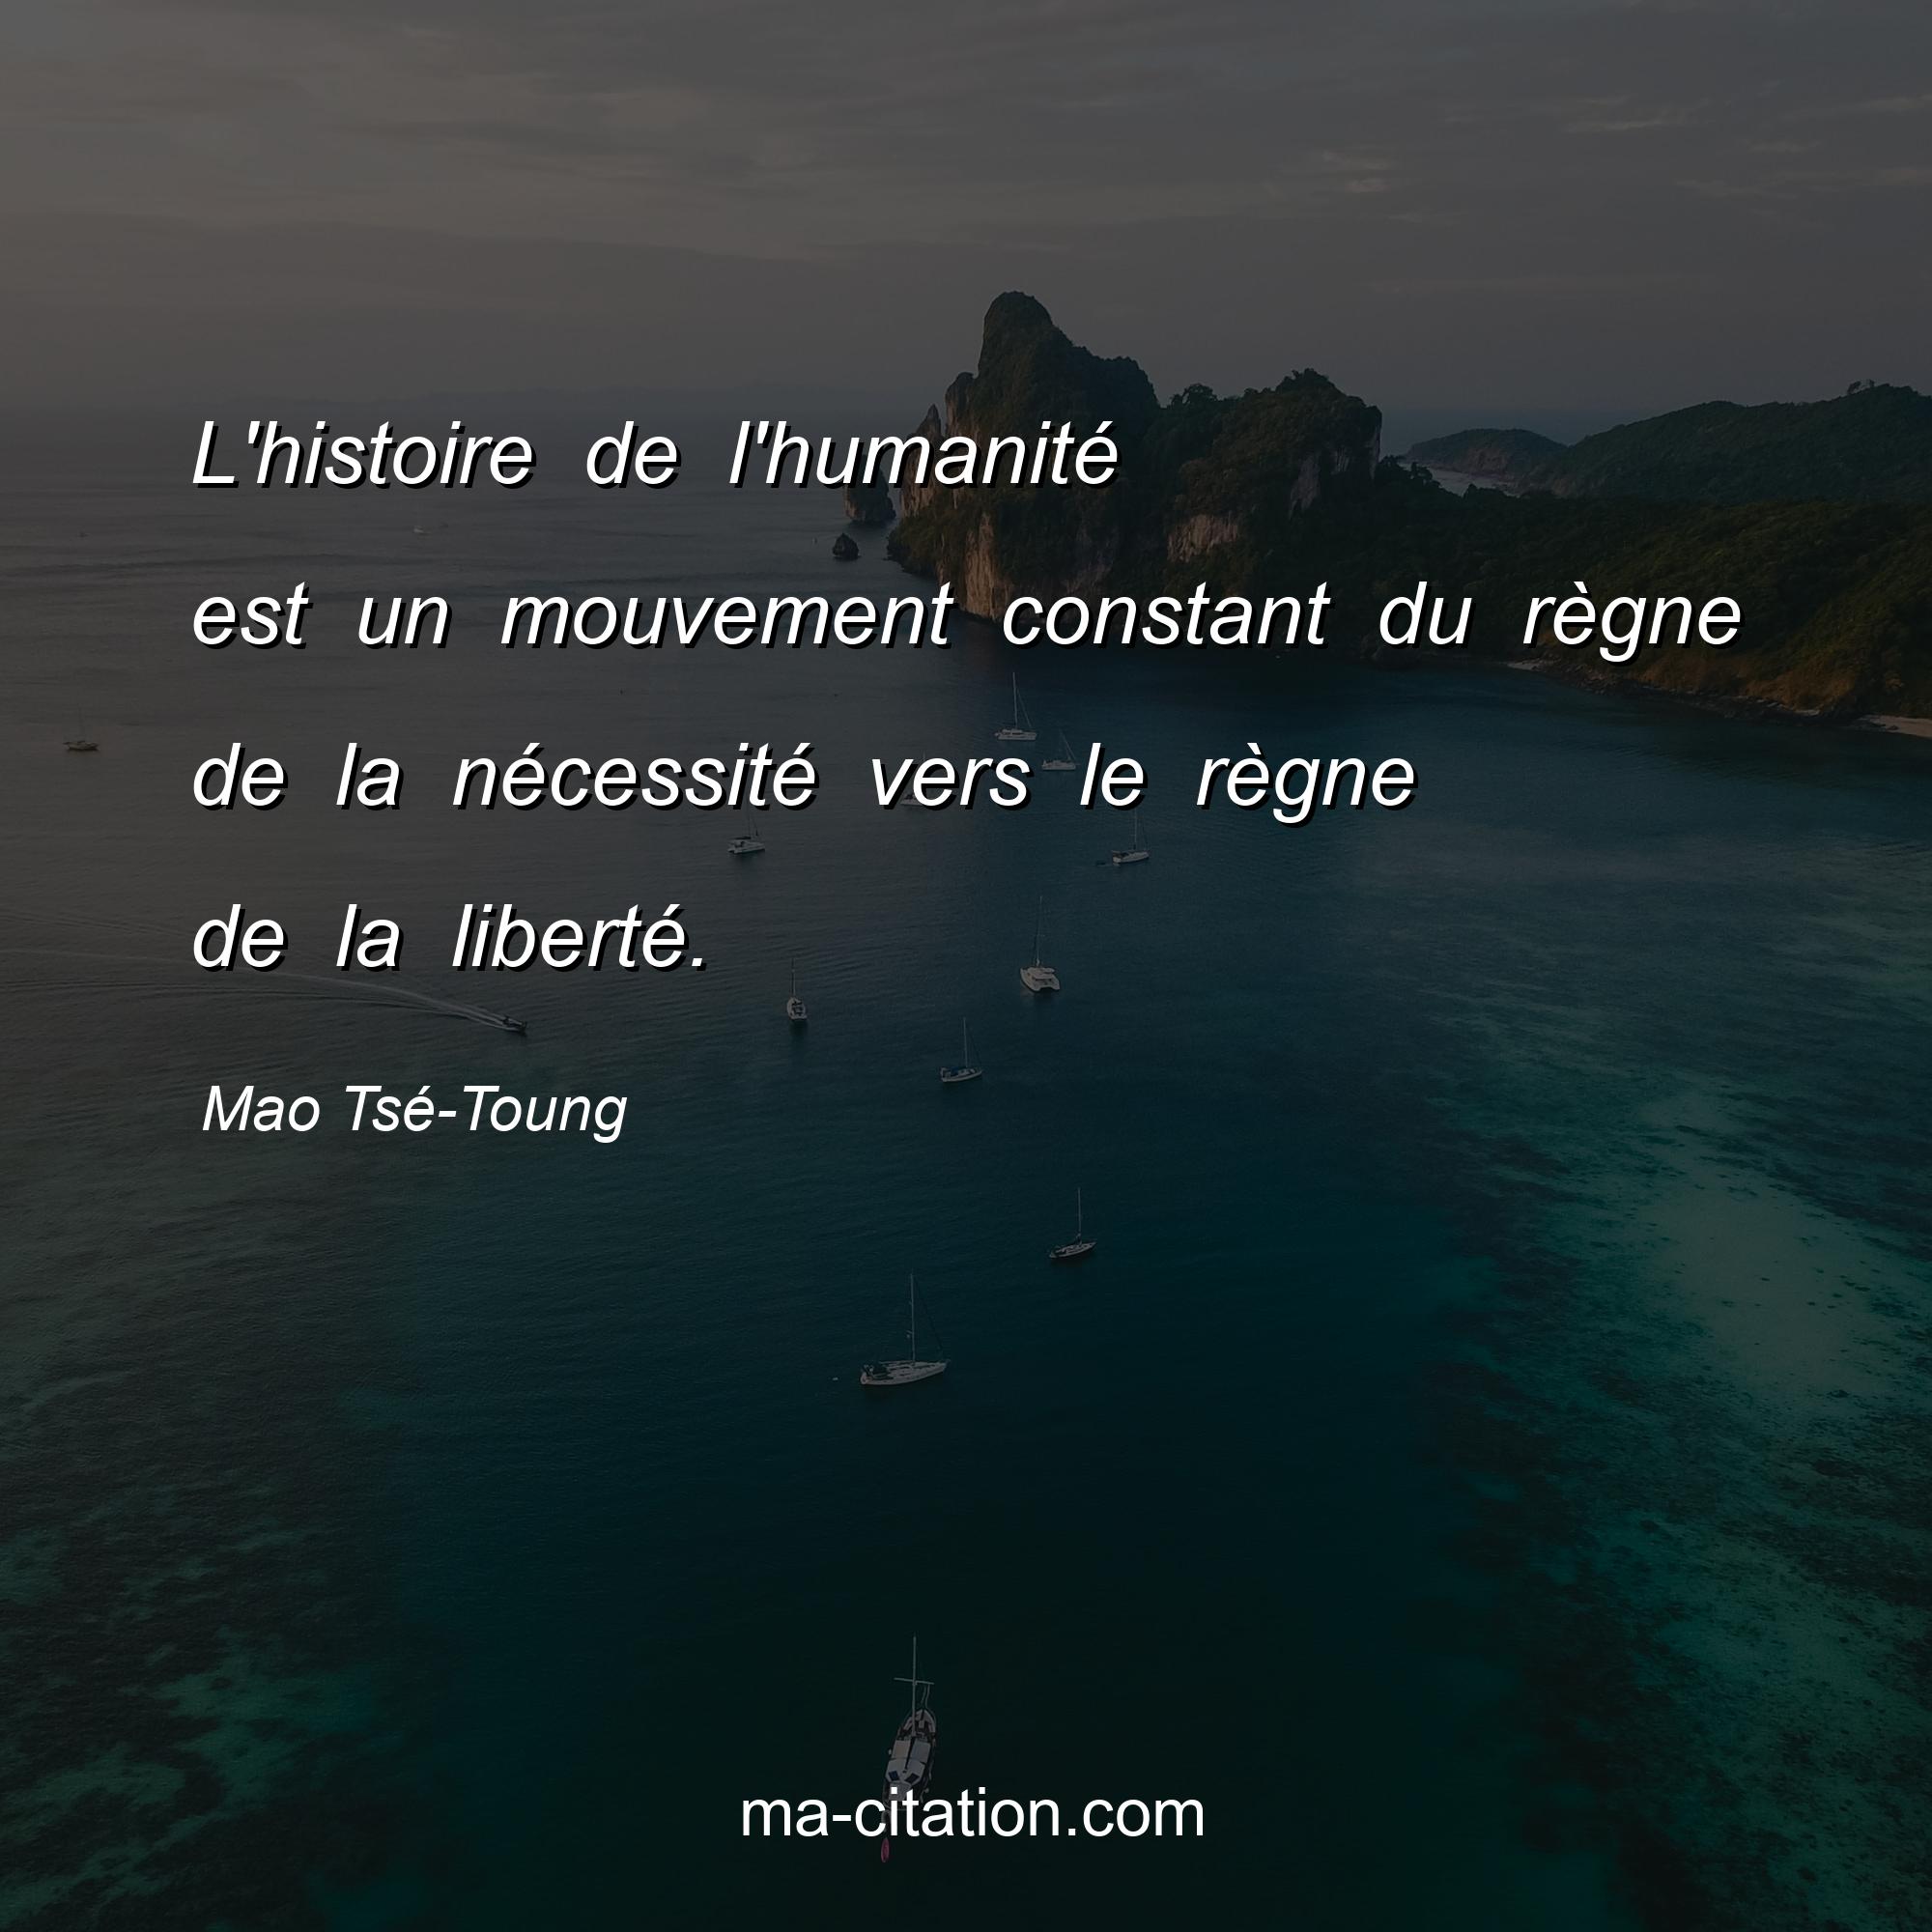 Mao Tsé-Toung : L'histoire de l'humanité est un mouvement constant du règne de la nécessité vers le règne de la liberté.